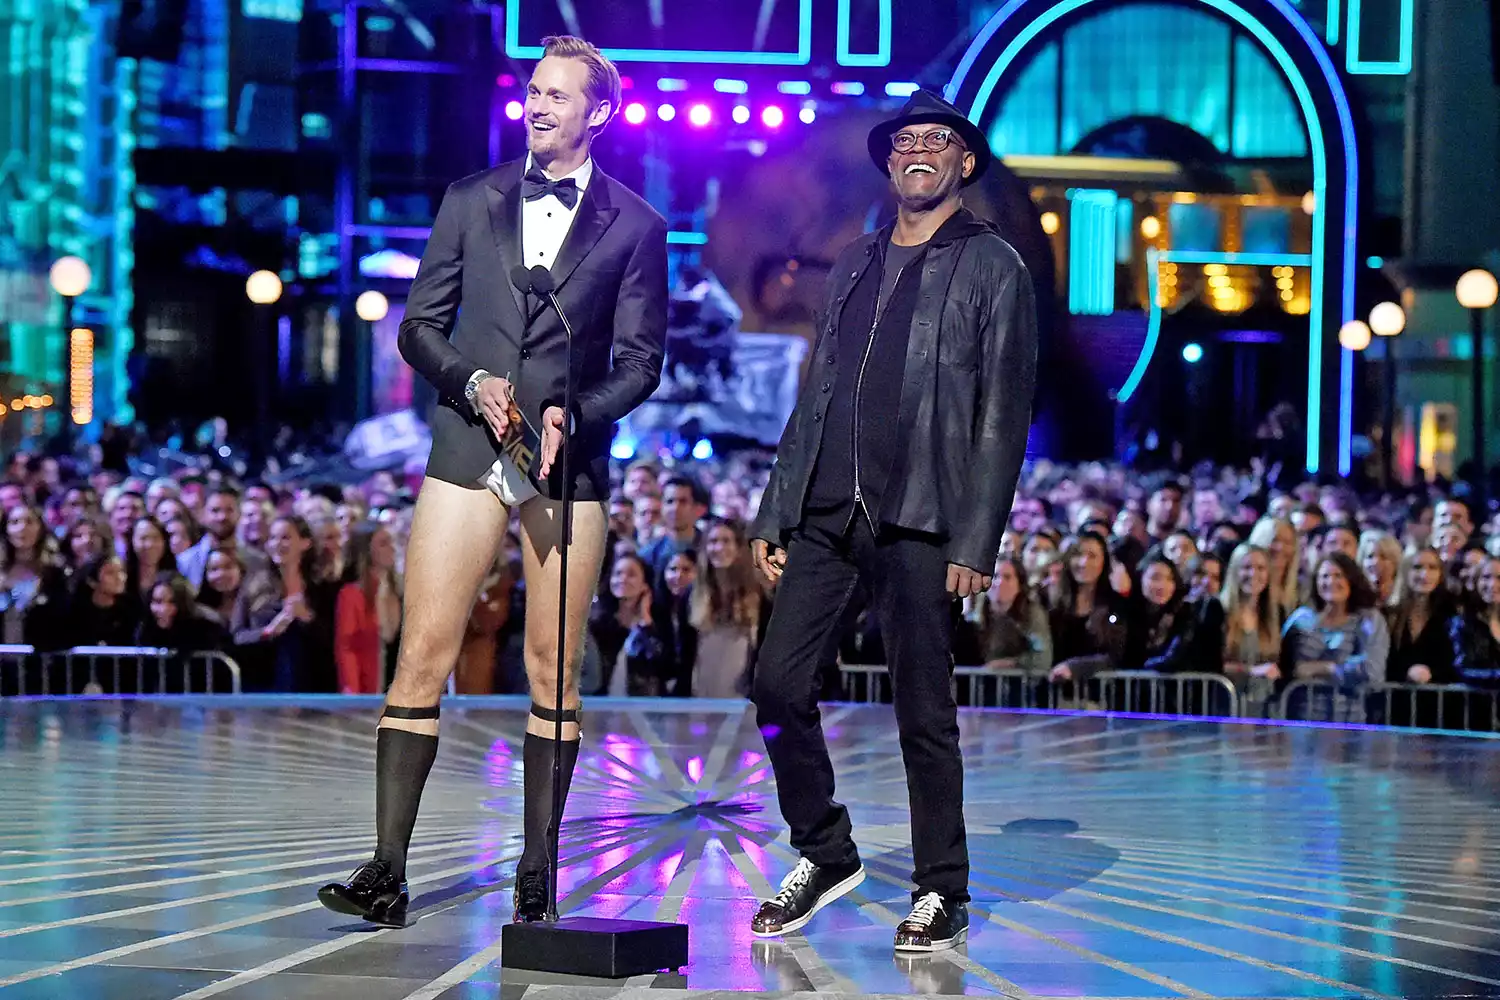 Alexander Skarsgård and Samuel L. Jackson at the 2016 MTV Movie Awards 